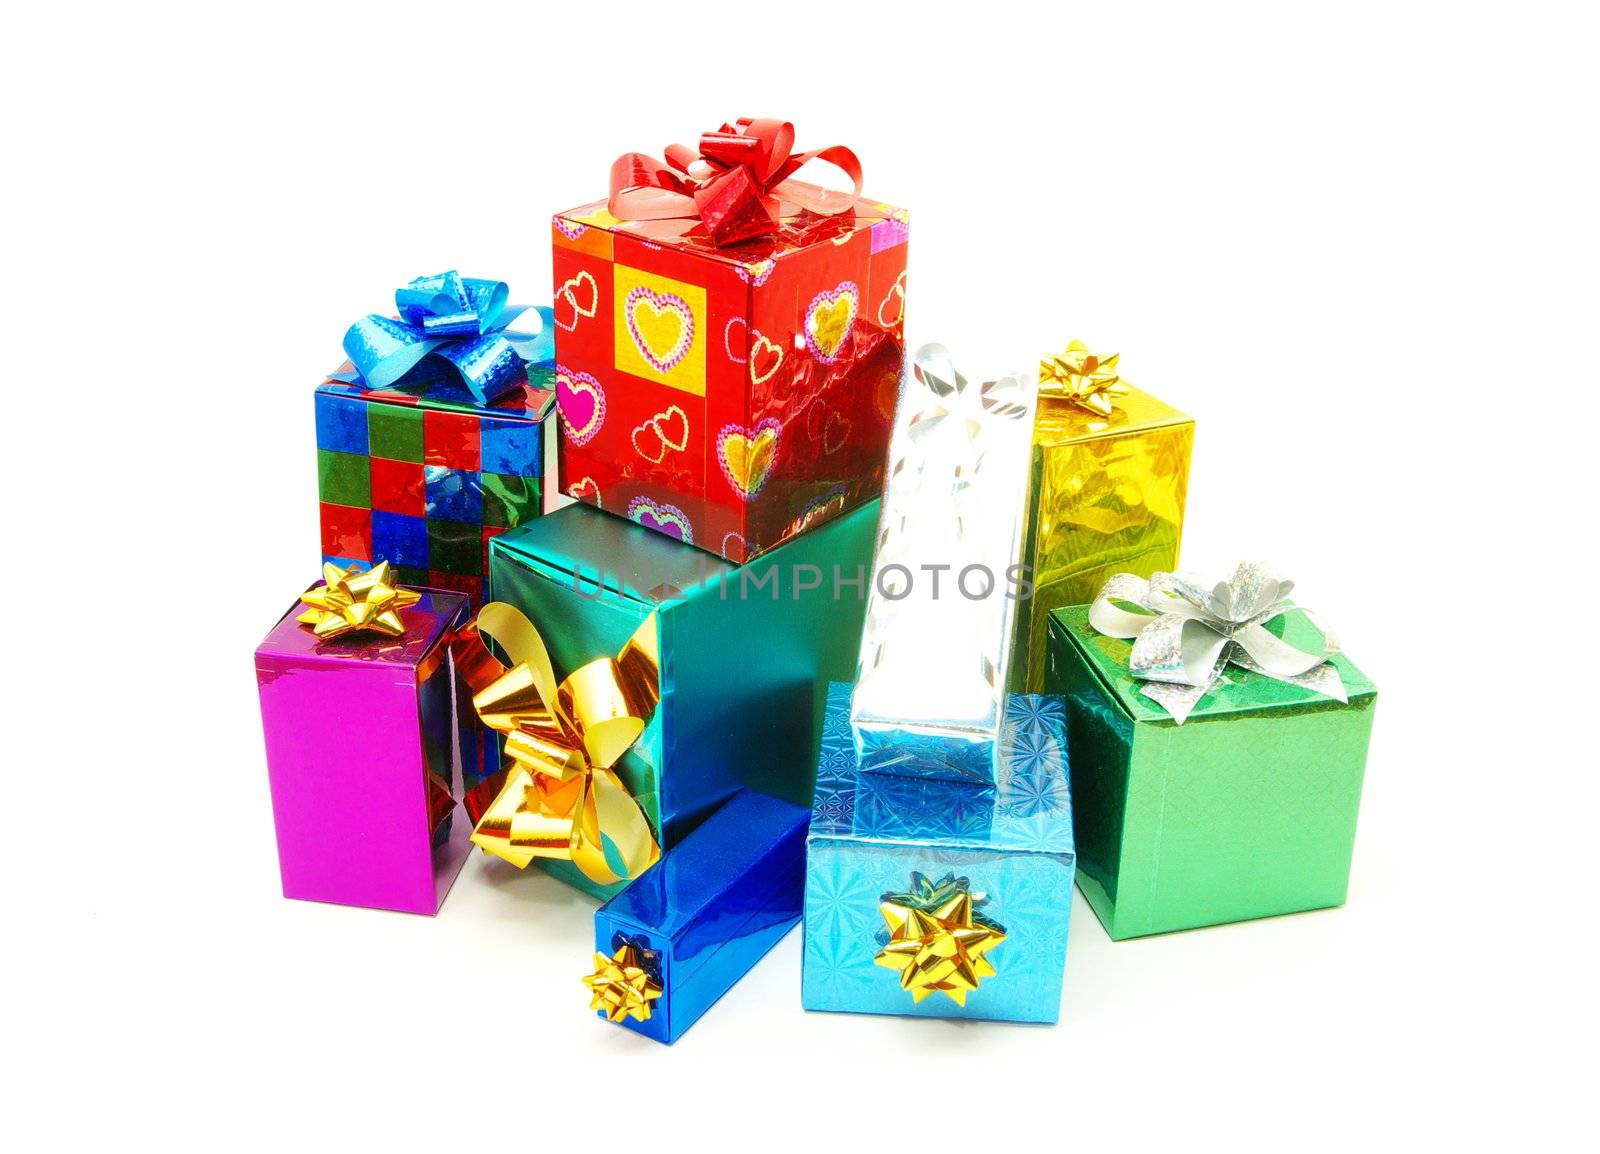 Christmas gifts  by Pakhnyushchyy